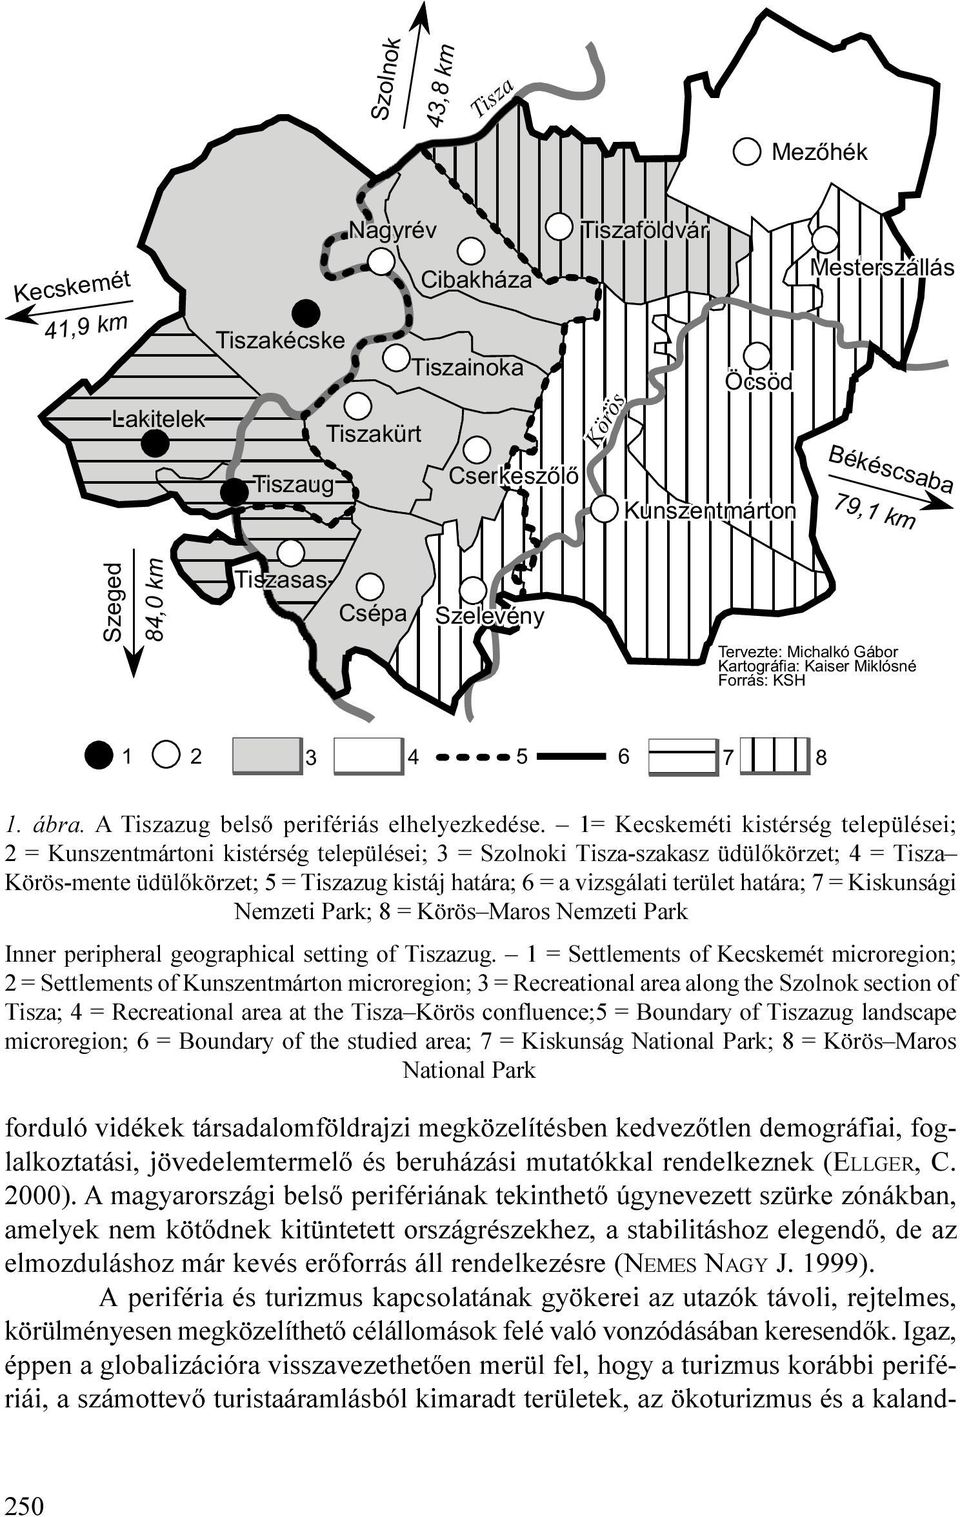 1= Kecskeméti kistérség települései; 2 = Kunszentmártoni kistérség települései; 3 = Szolnoki Tisza-szakasz üdülõkörzet; 4 = Tisza Körös-mente üdülõkörzet; 5 = Tiszazug kistáj határa; 6 = a vizsgálati